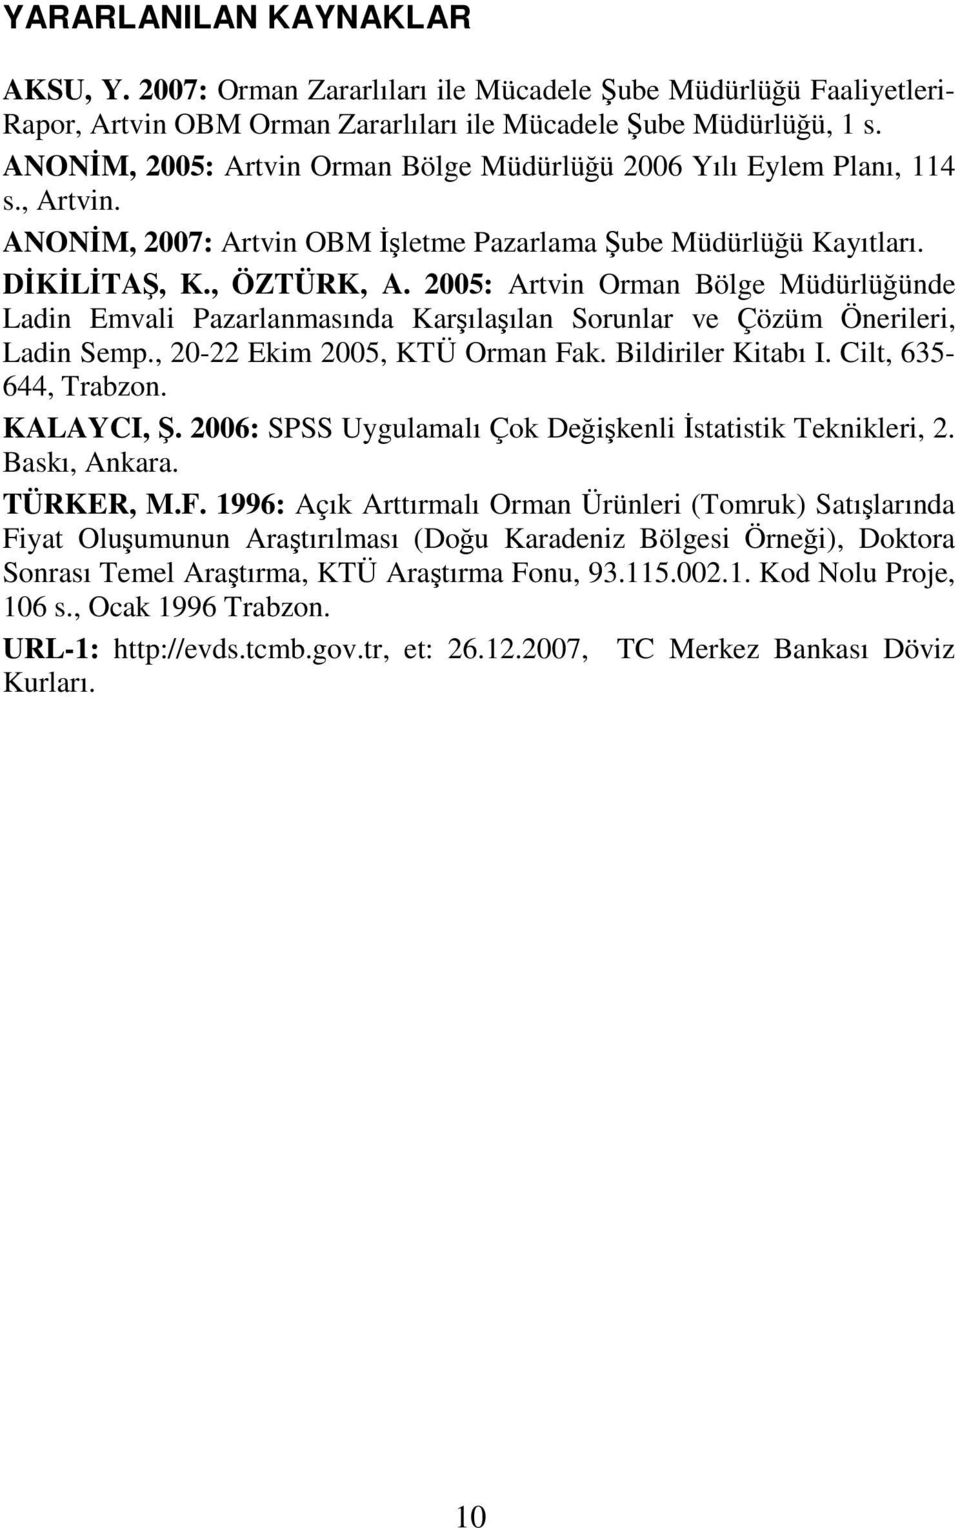 2005: Artvin Orman Bölge Müdürlüğünde Ladin Emvali Pazarlanmasında Karşılaşılan Sorunlar ve Çözüm Önerileri, Ladin Semp., 20-22 Ekim 2005, KTÜ Orman Fak. Bildiriler Kitabı I. Cilt, 635-644, Trabzon.